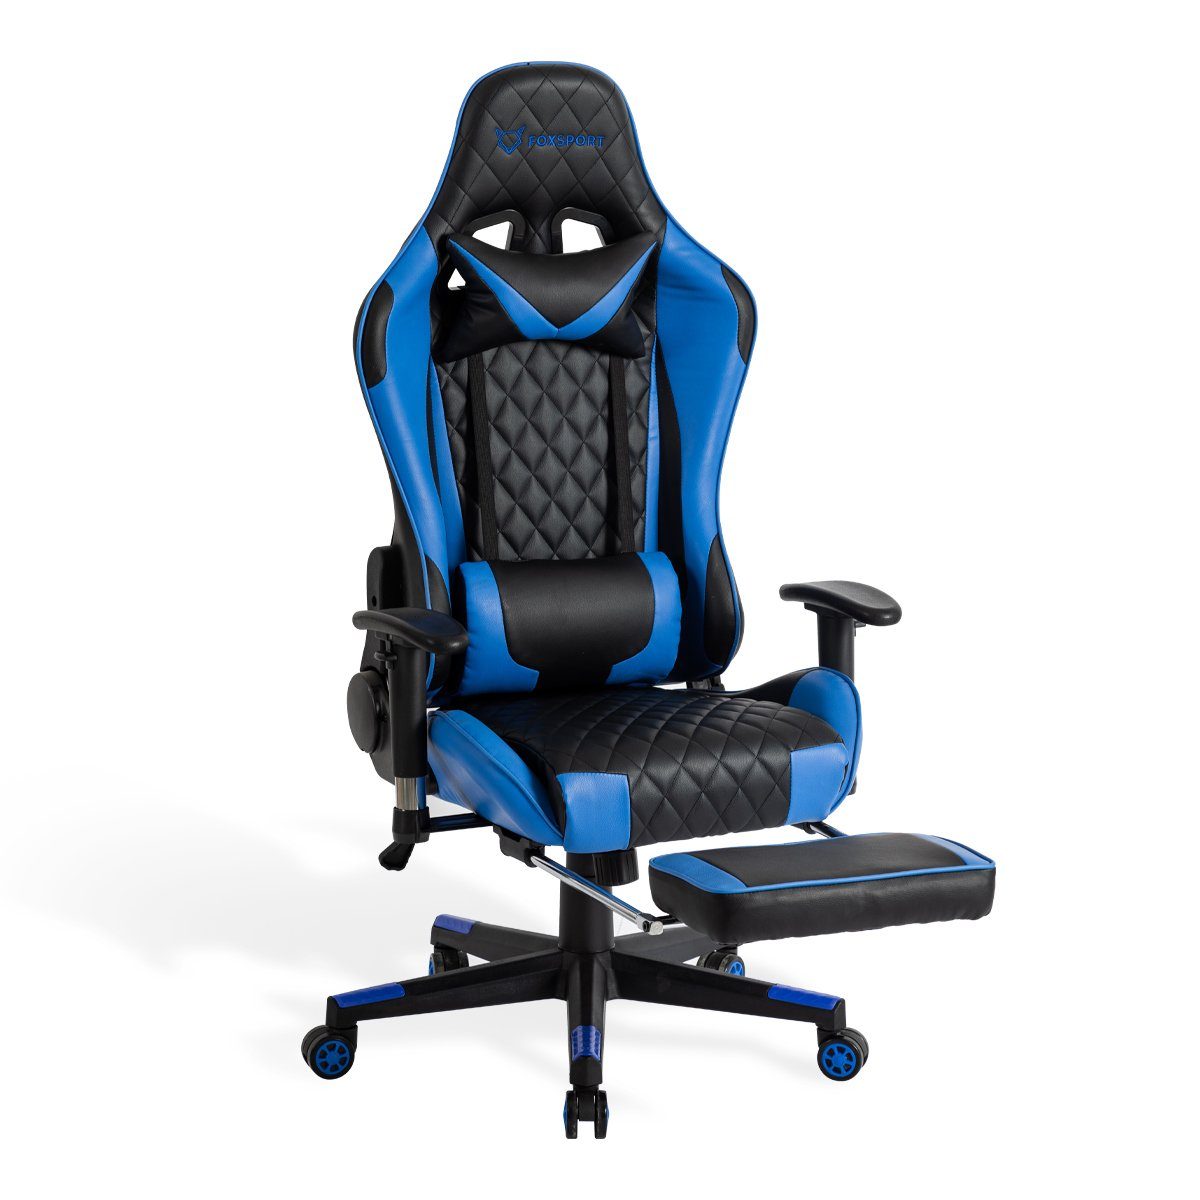 IKIDO Gaming-Stuhl Beinauflage Mit blau Gamingstuhl), (Professioneller Wippmechanismus und Fußstütze, Pedal-Gaming-Stuhl Eingebauter